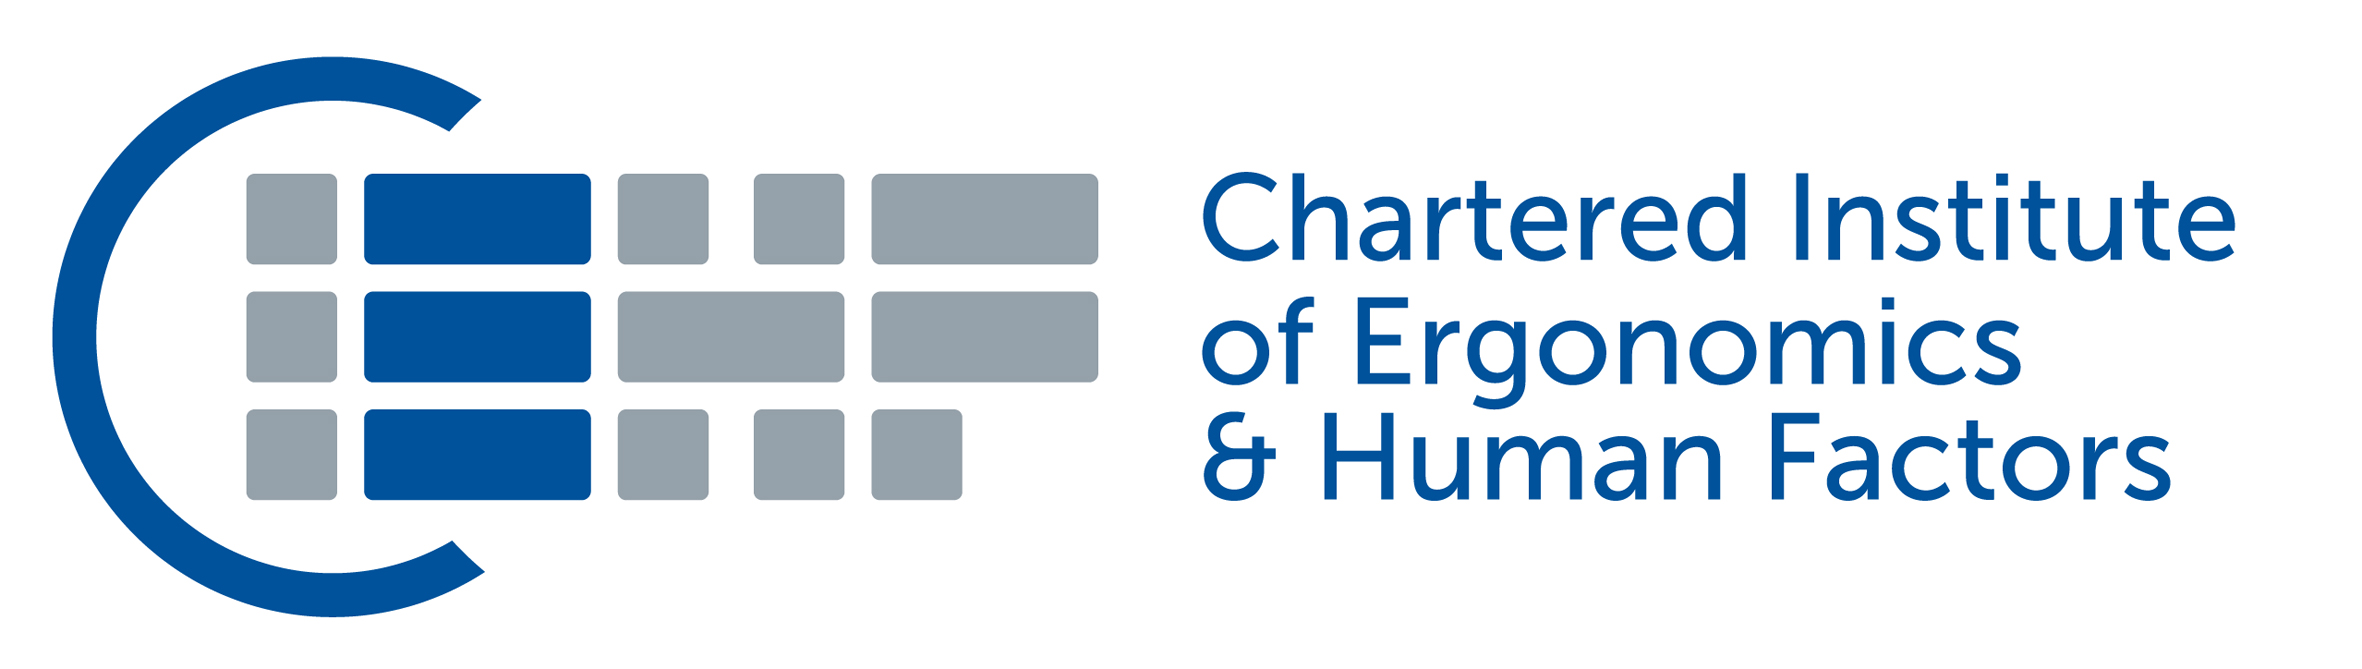 Chartered Institute of Ergonomics